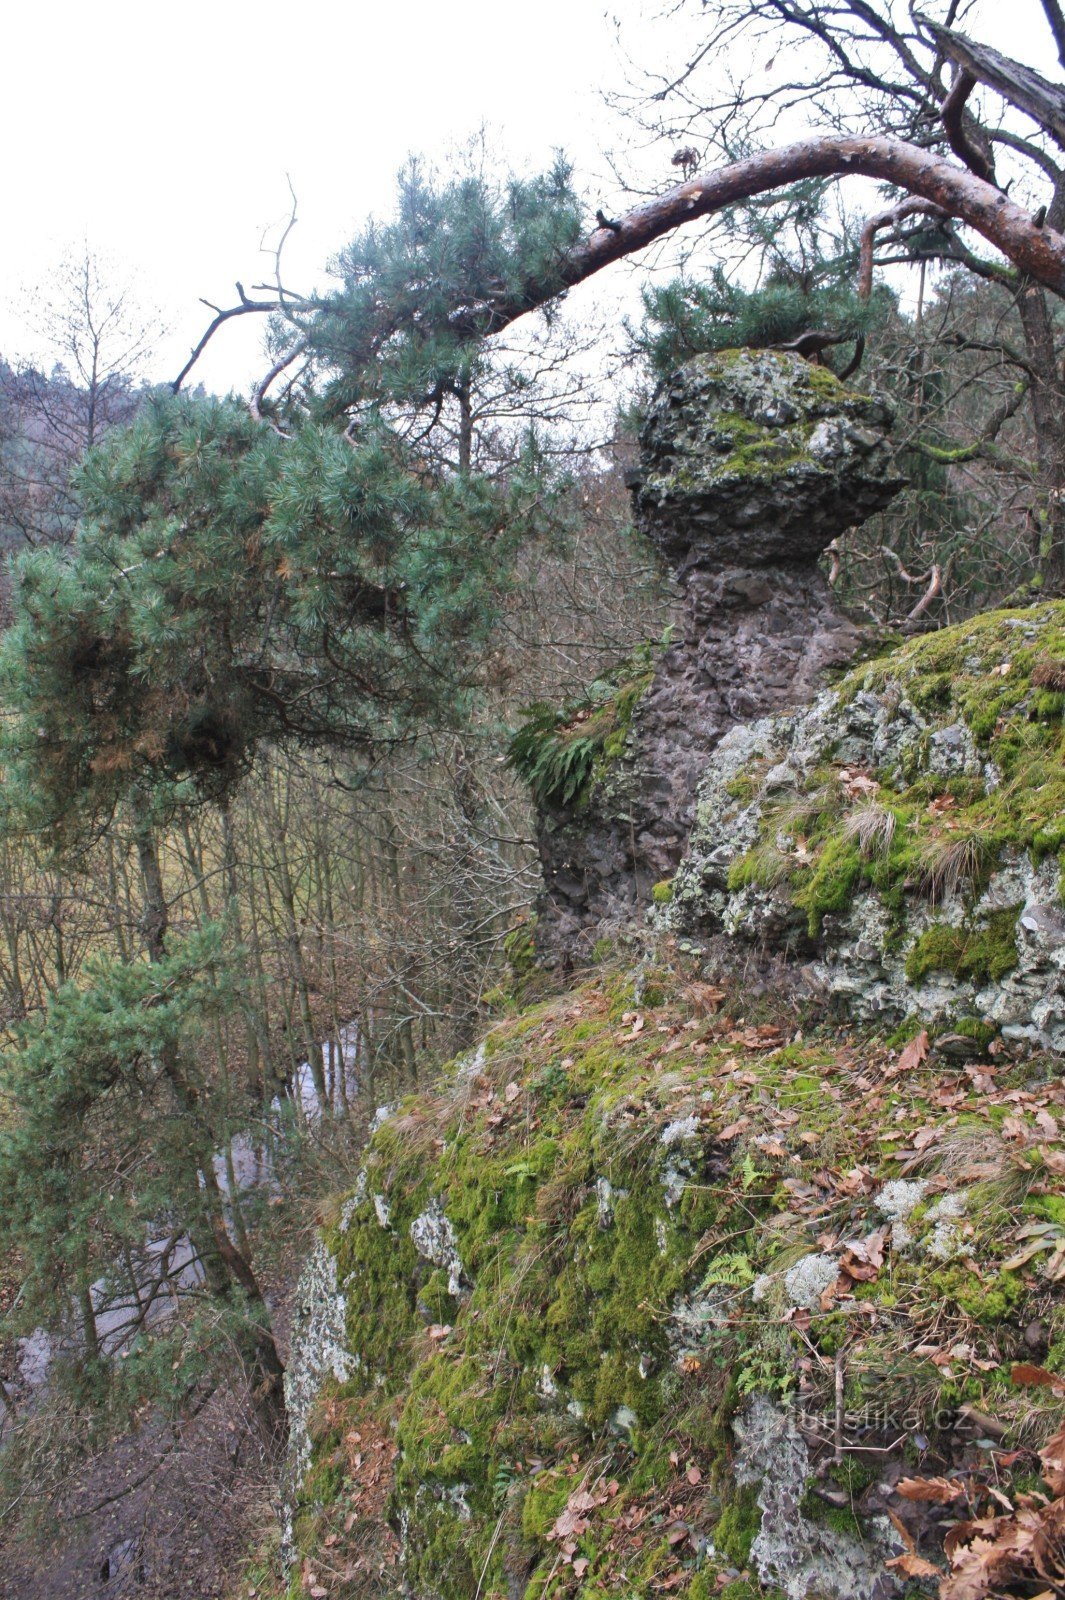 Krkatá baba ligger på toppen av klipporna ovanför Lubě-strömmen